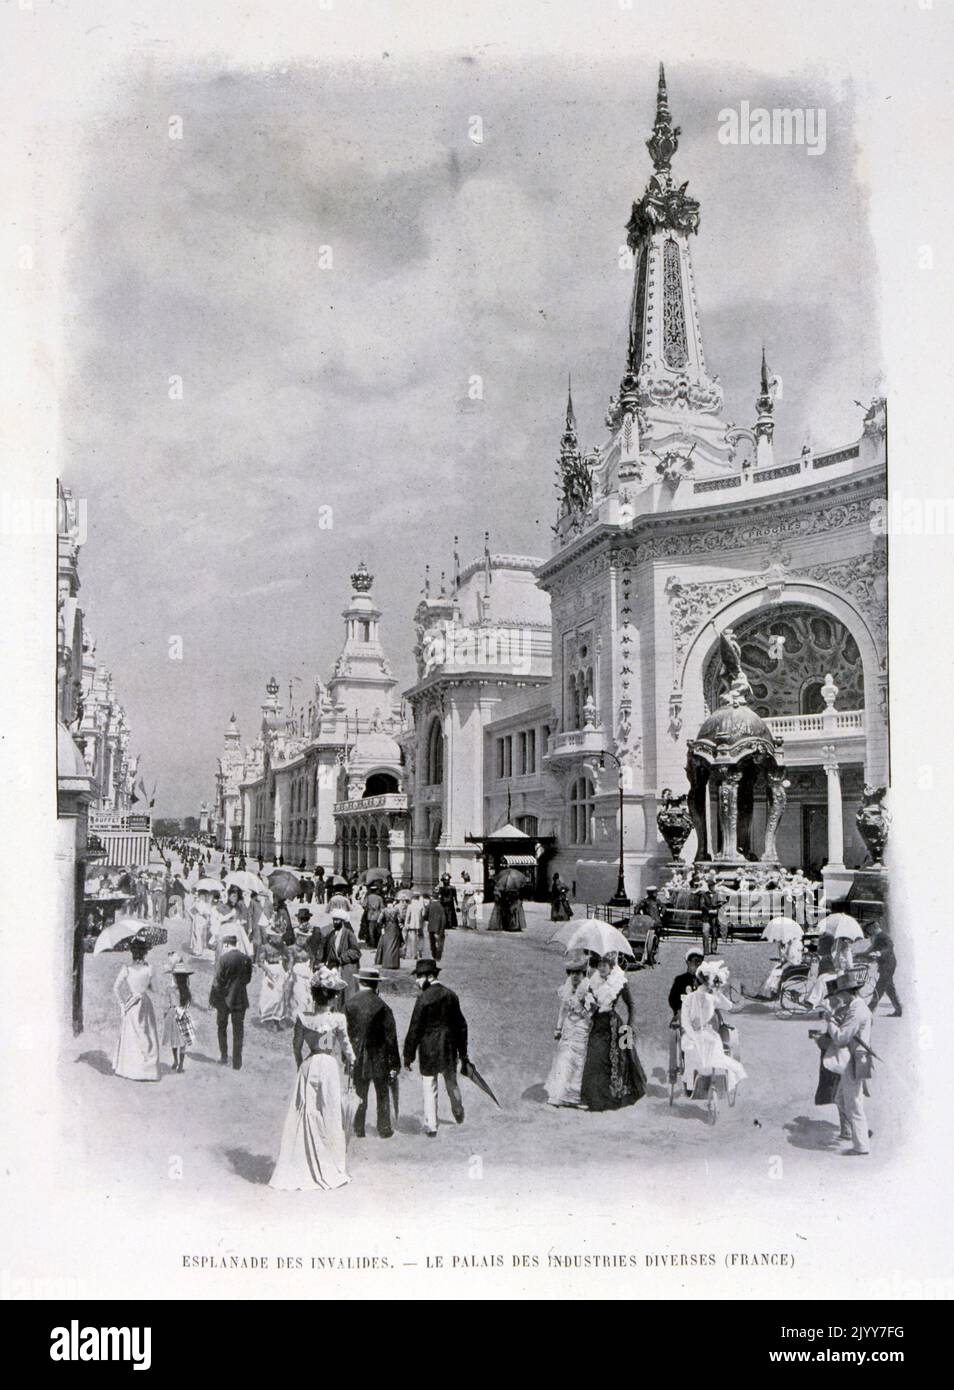 Exposition Universelle (World Fair) Paris, 1900; black and white photograph; Esplanade des Invalides; exterior view of Le Palais des Industries Diverses (decorative arts and crafts). Stock Photo